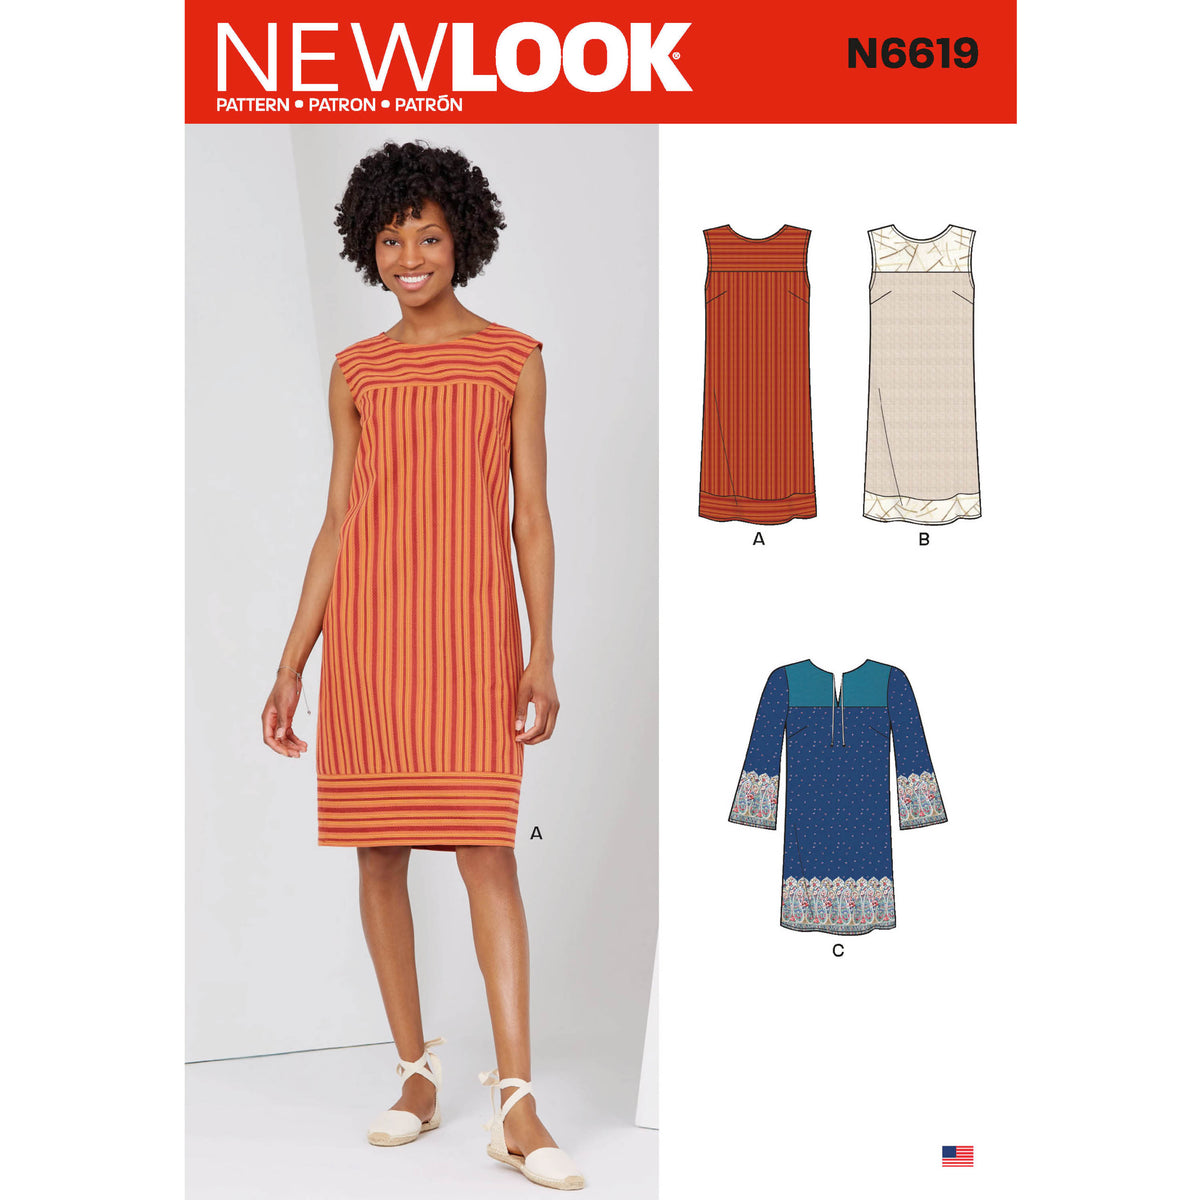 6619 New Look Sewing Pattern N6619 Misses' Dresses